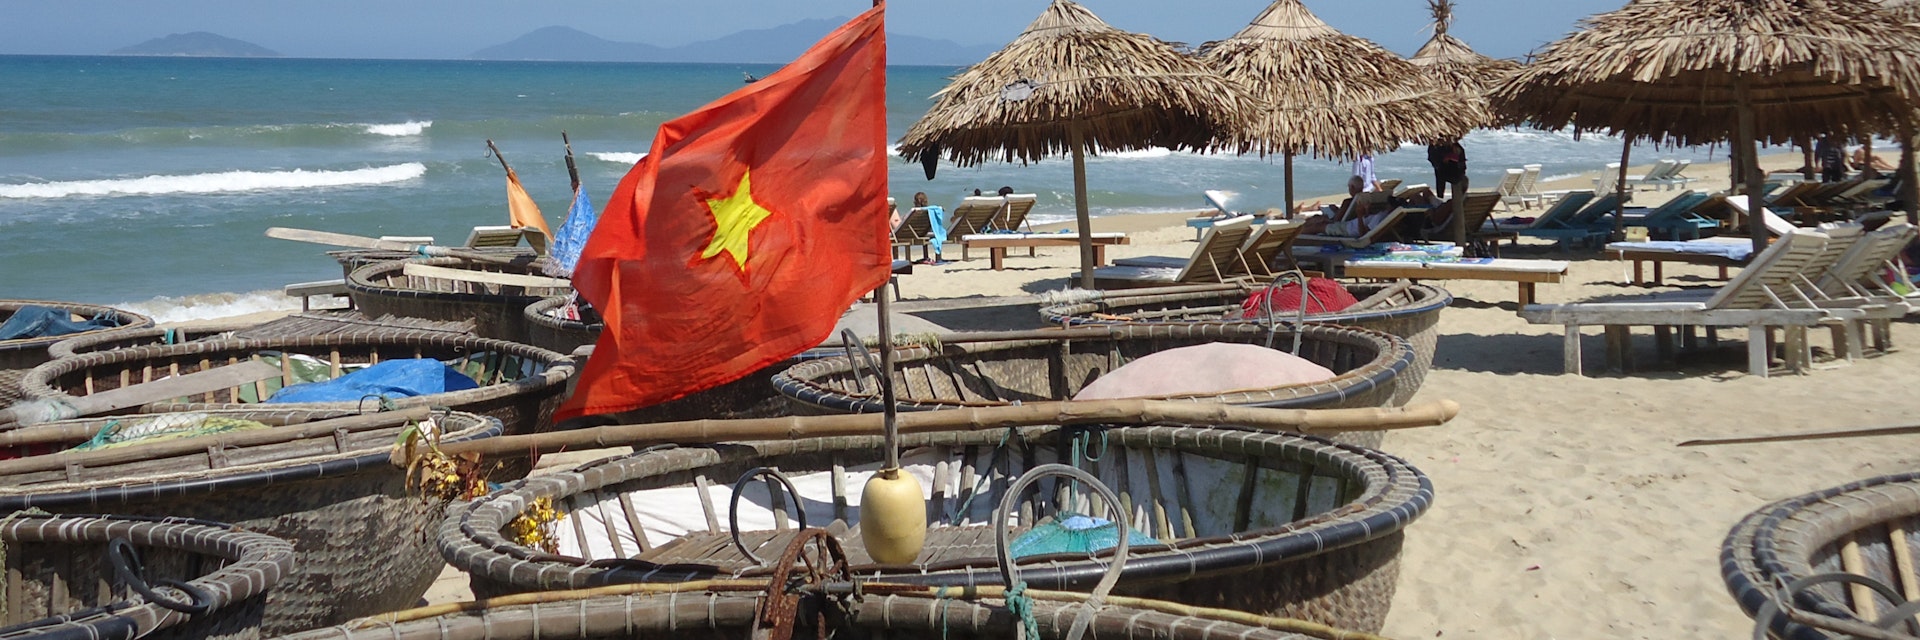 Hoi an beach, Vietnam